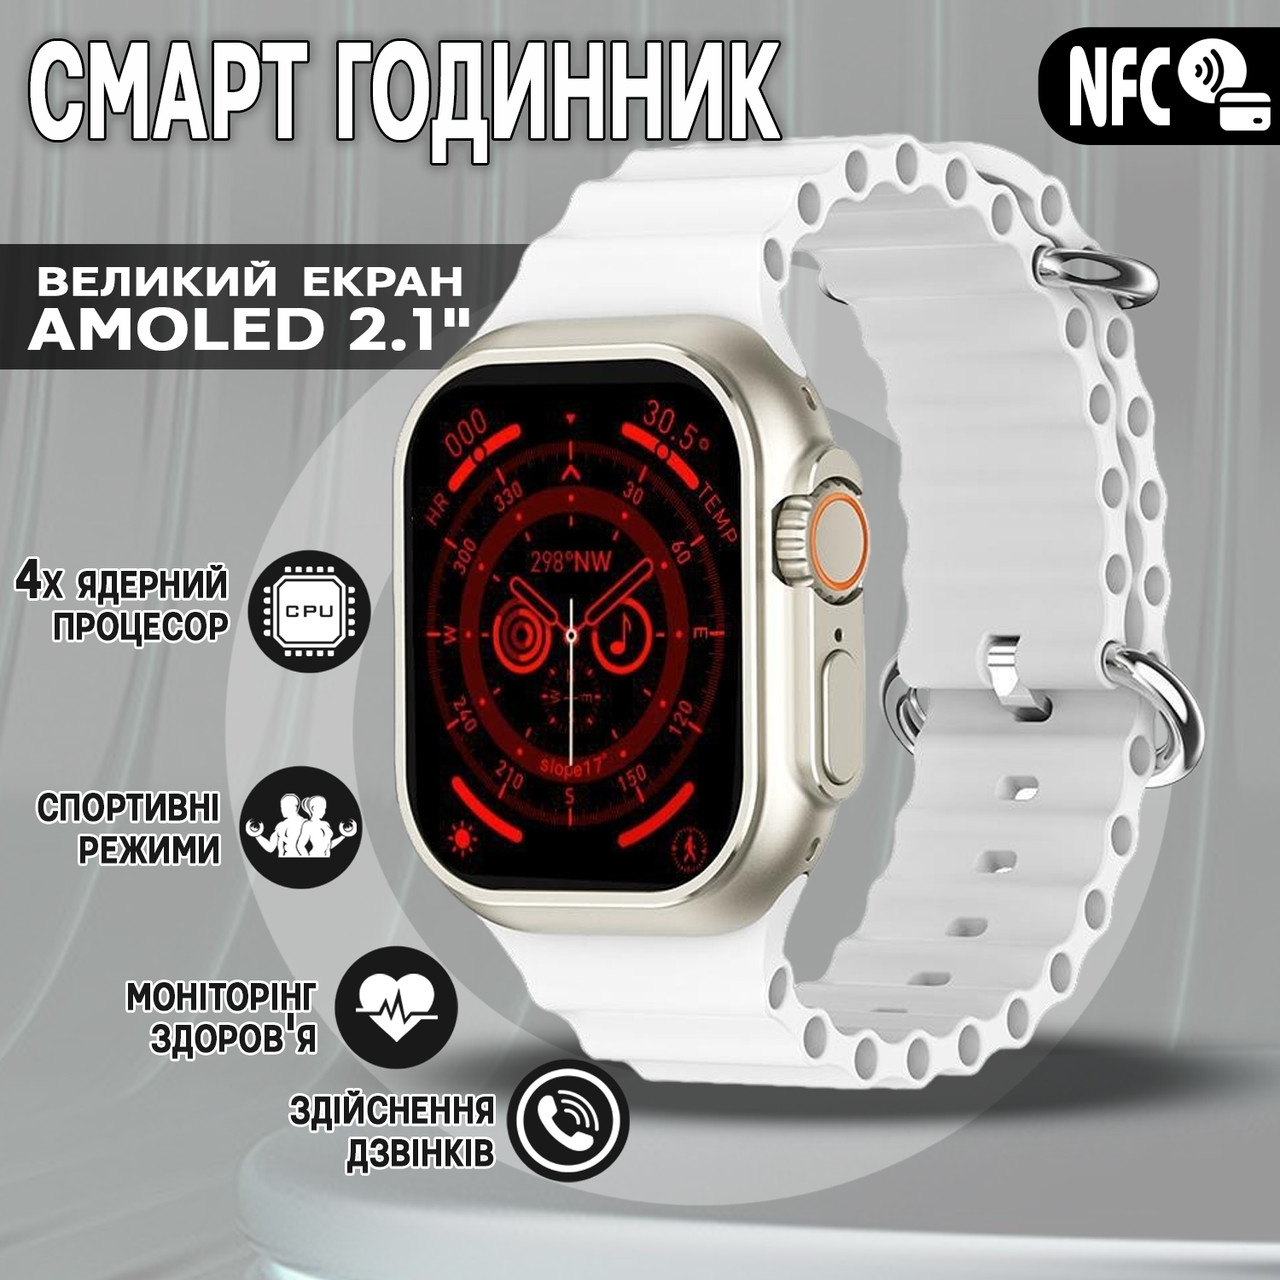 Смарт годинник Smart Watch ULTRA MAX 9-2.1" спортивні режими, цілодобовий моніторинг здоров'я White